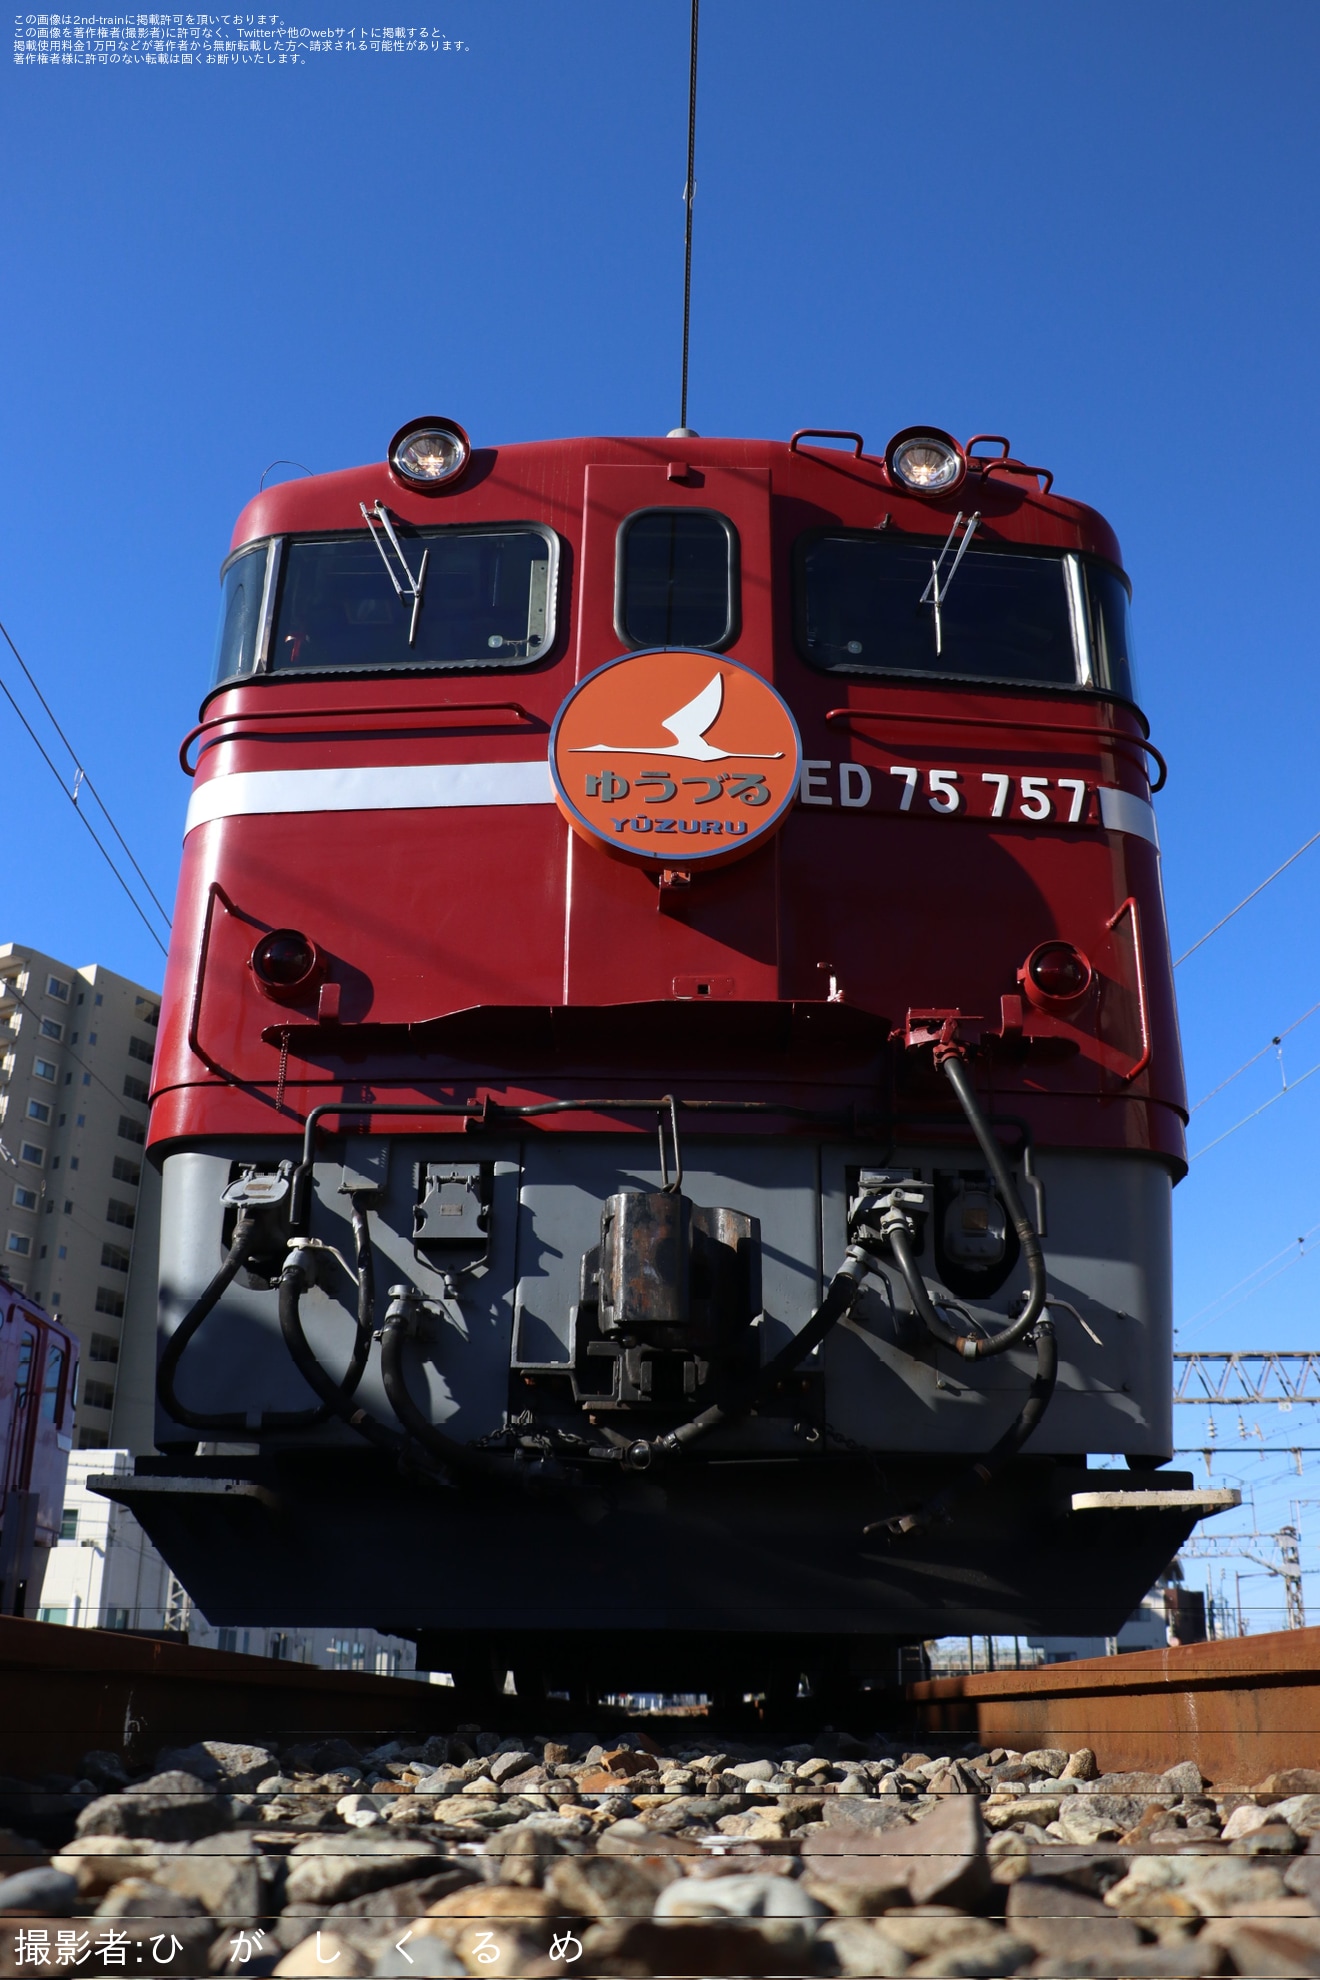 【JR東】「常磐線 往年の機関車展示撮影会」開催の拡大写真